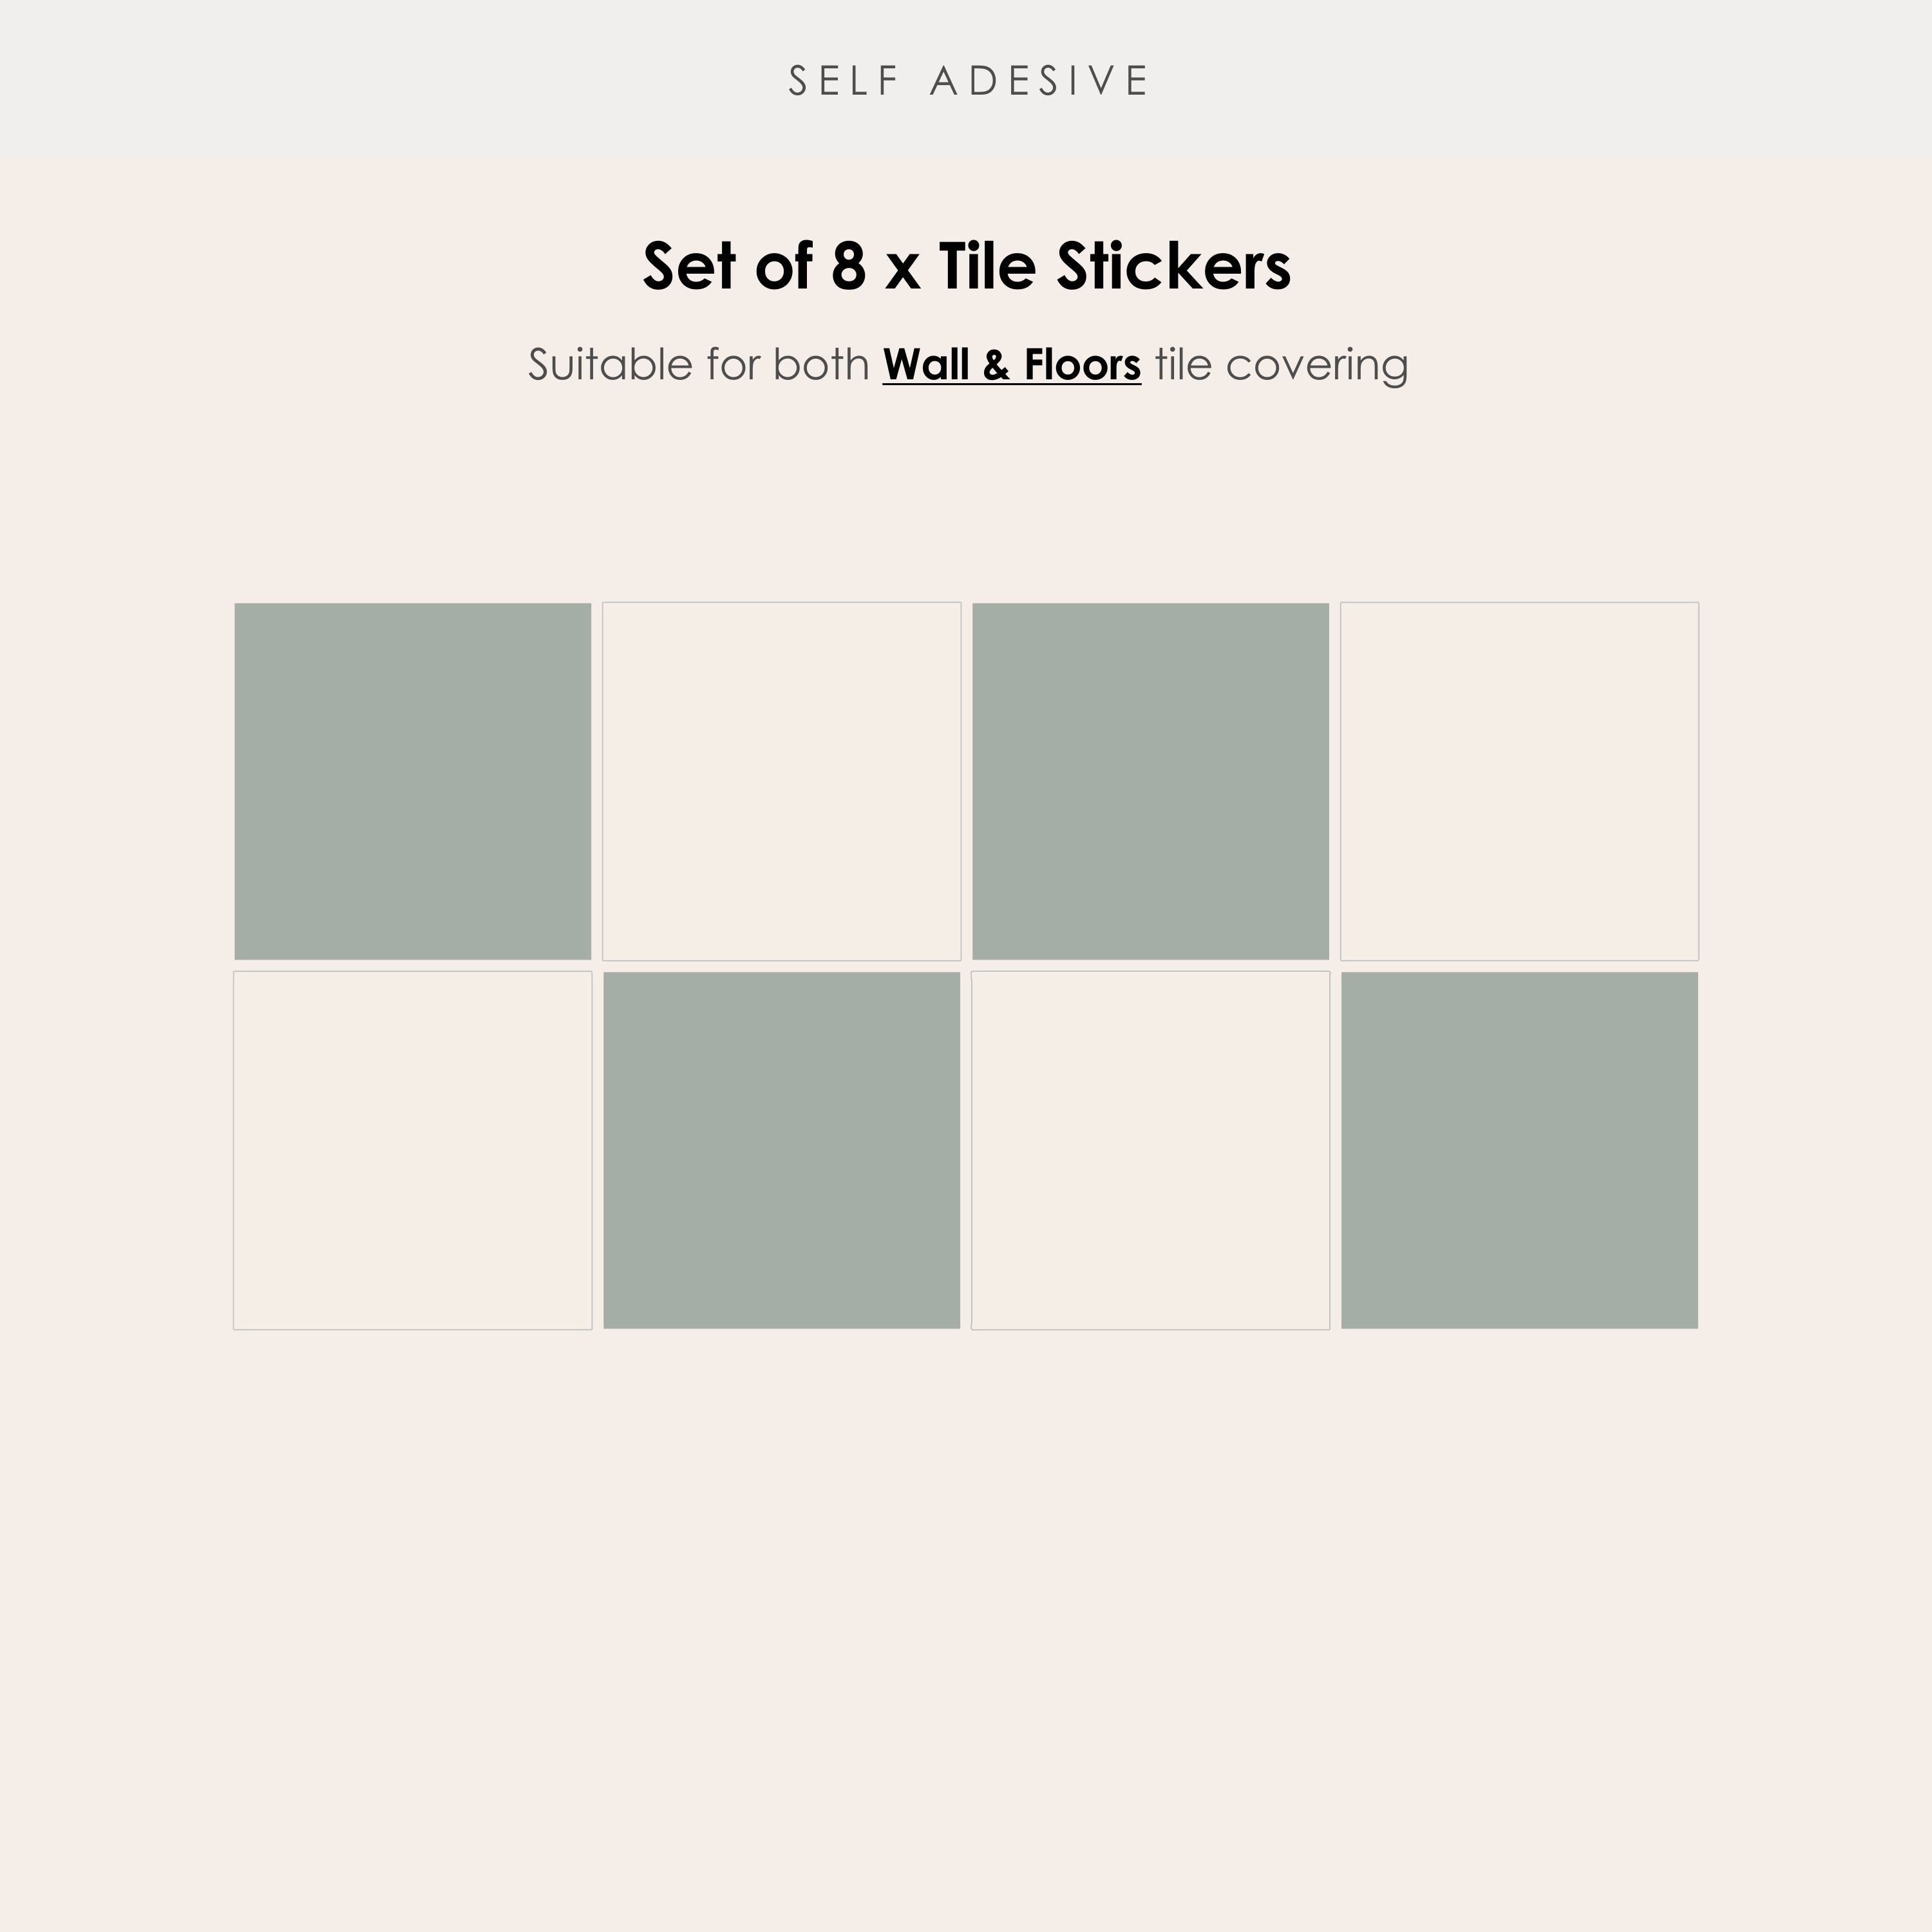 Checkerboard in Sage Tile Sticker